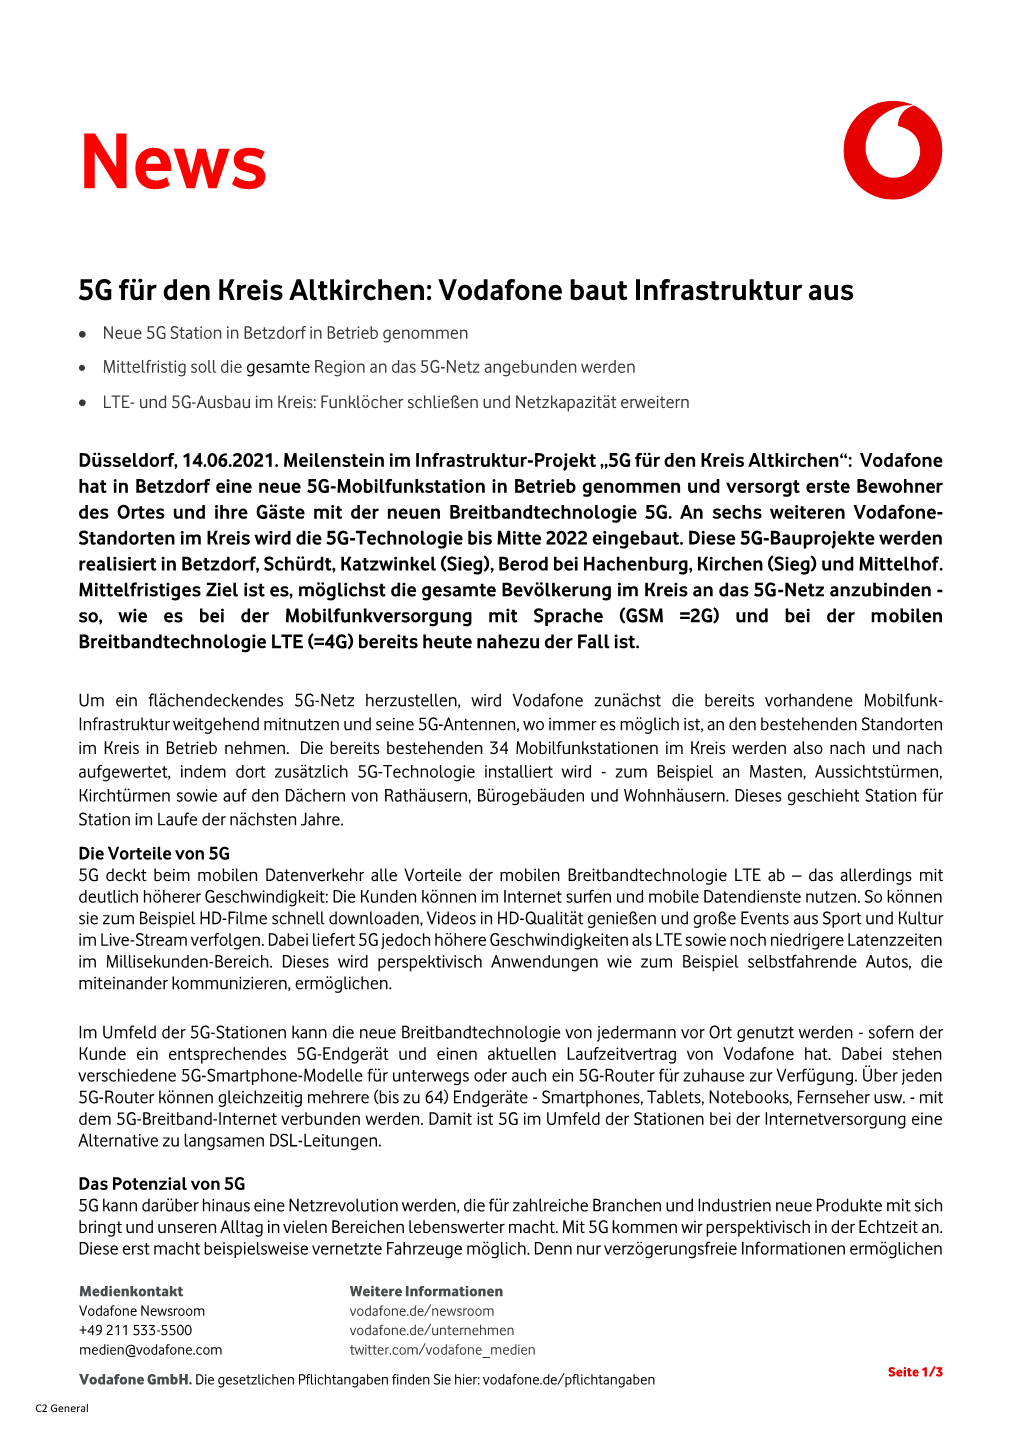 5G Für Den Kreis Altkirchen: Vodafone Baut Infrastruktur